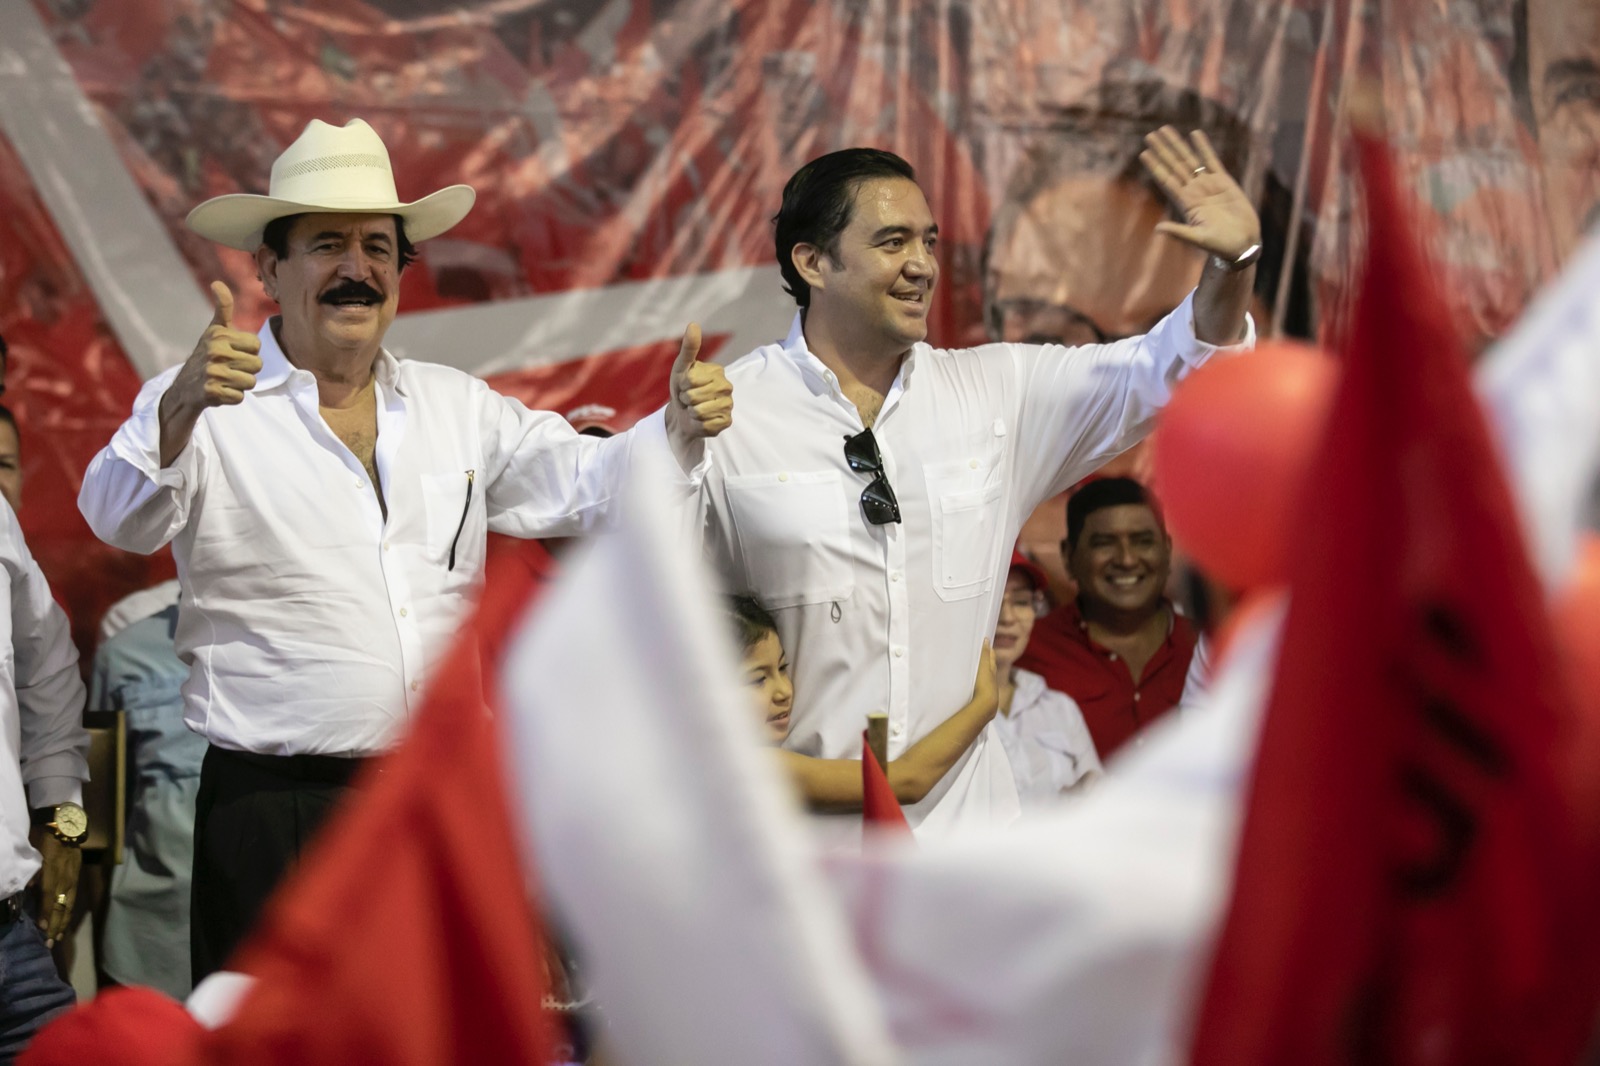 Con elecciones “limpias y transparentes” se puede sacar a la familia Zelaya, dice diputado nacionalista  